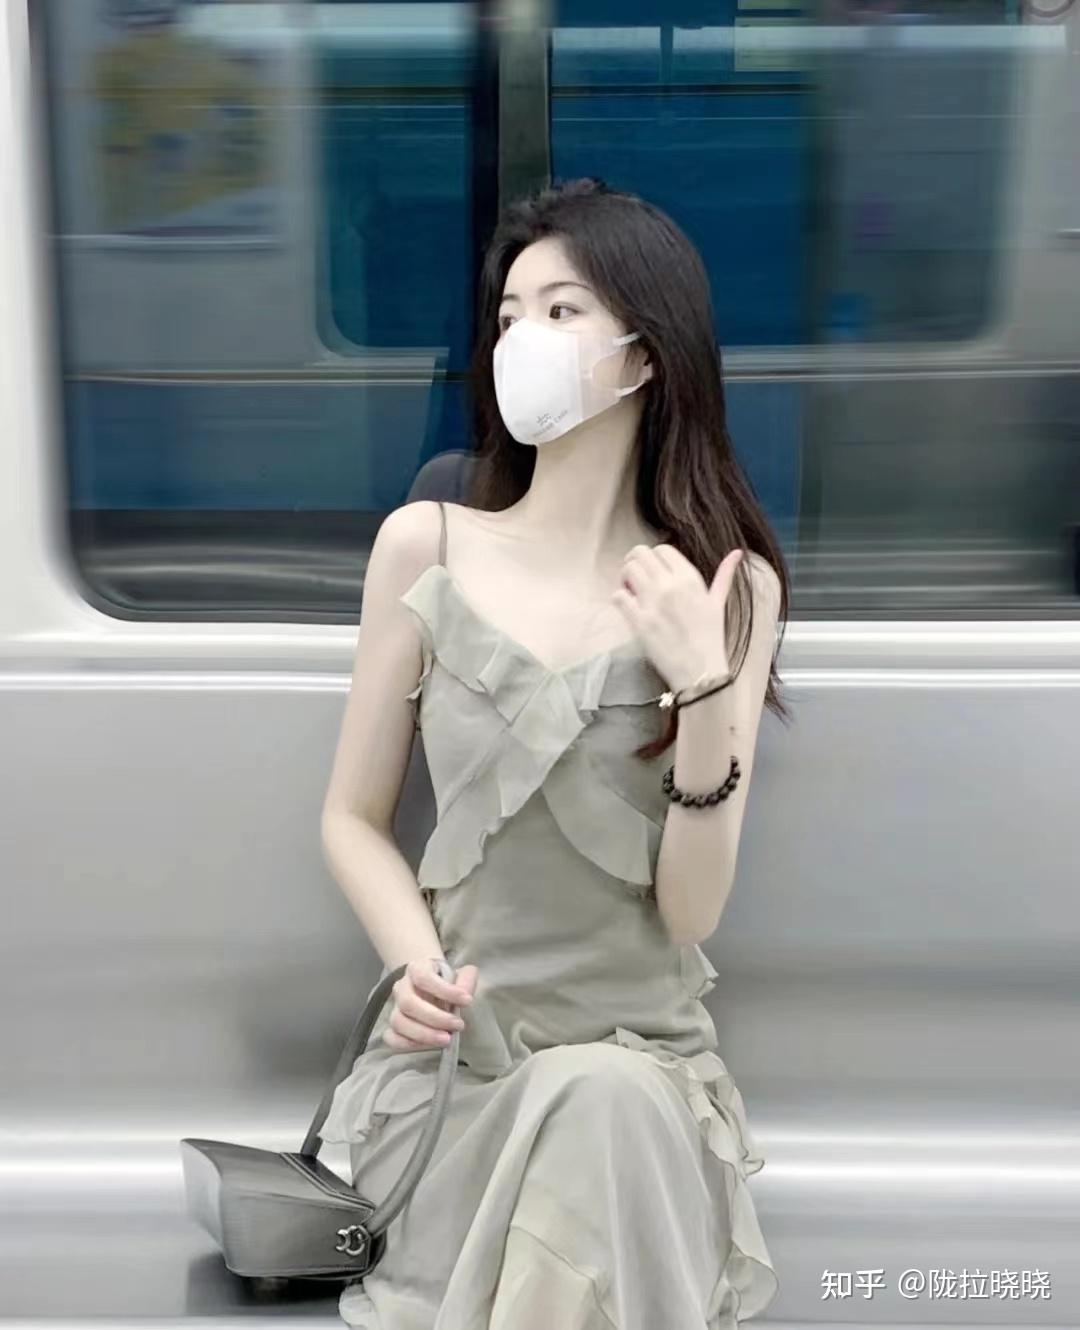 黑丝制服美女的诱惑[50P]|MM 写真 - 武当休闲山庄 - 稳定,和谐,人性化的中文社区